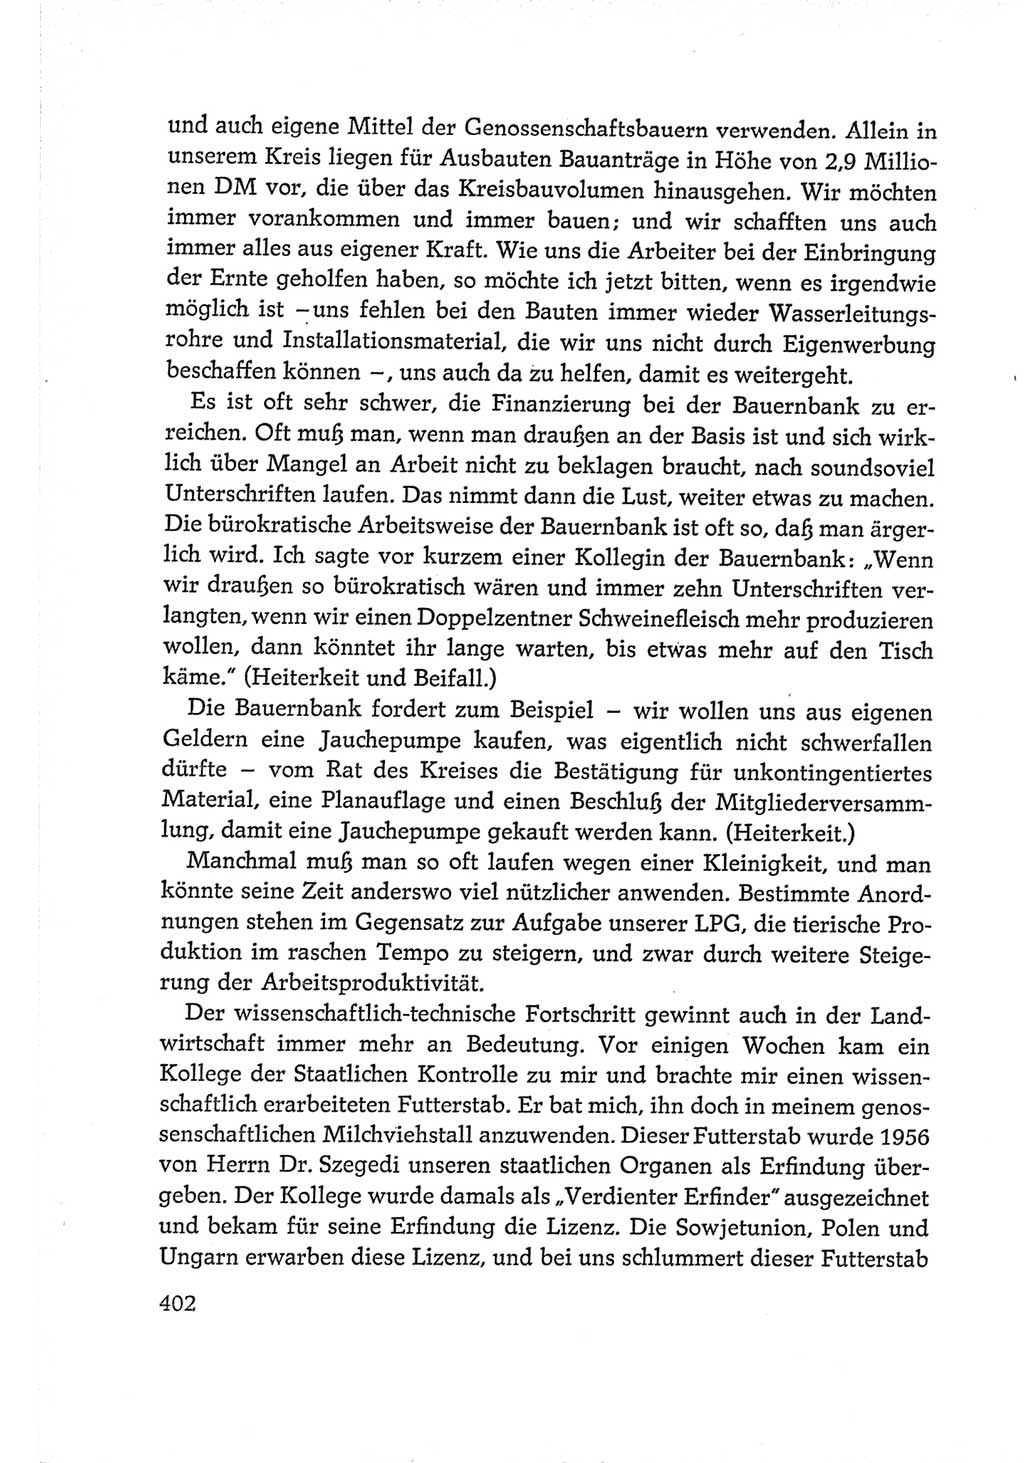 Protokoll der Verhandlungen des Ⅵ. Parteitages der Sozialistischen Einheitspartei Deutschlands (SED) [Deutsche Demokratische Republik (DDR)] 1963, Band Ⅰ, Seite 402 (Prot. Verh. Ⅵ. PT SED DDR 1963, Bd. Ⅰ, S. 402)